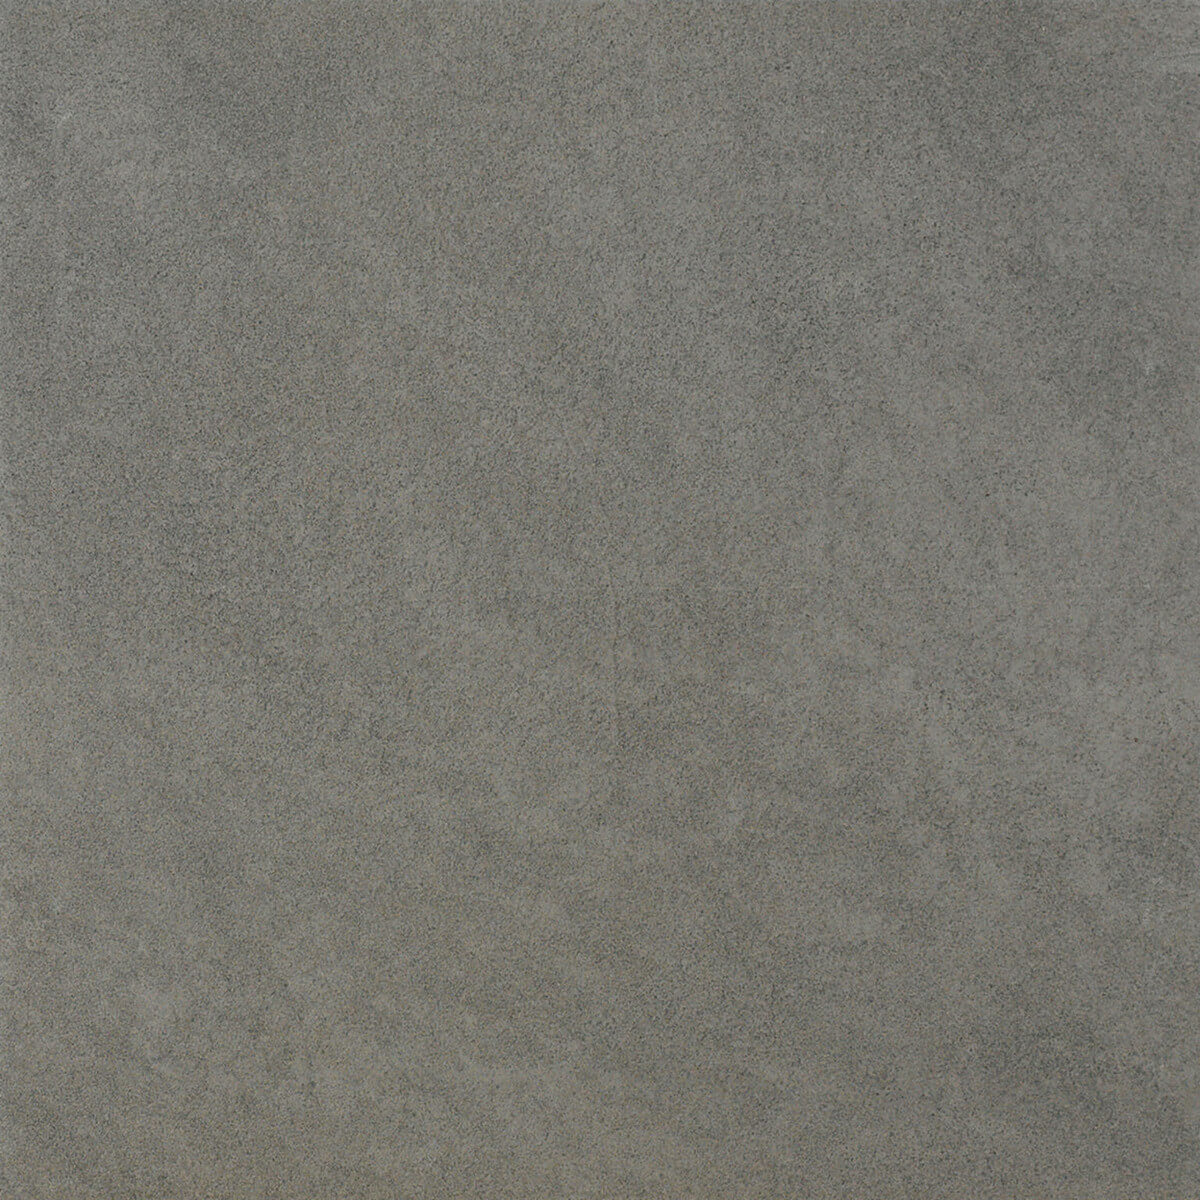 DOVER - Carrelage Sol Antidérapant Effet béton - Graphite 33x33 - Réf.181113